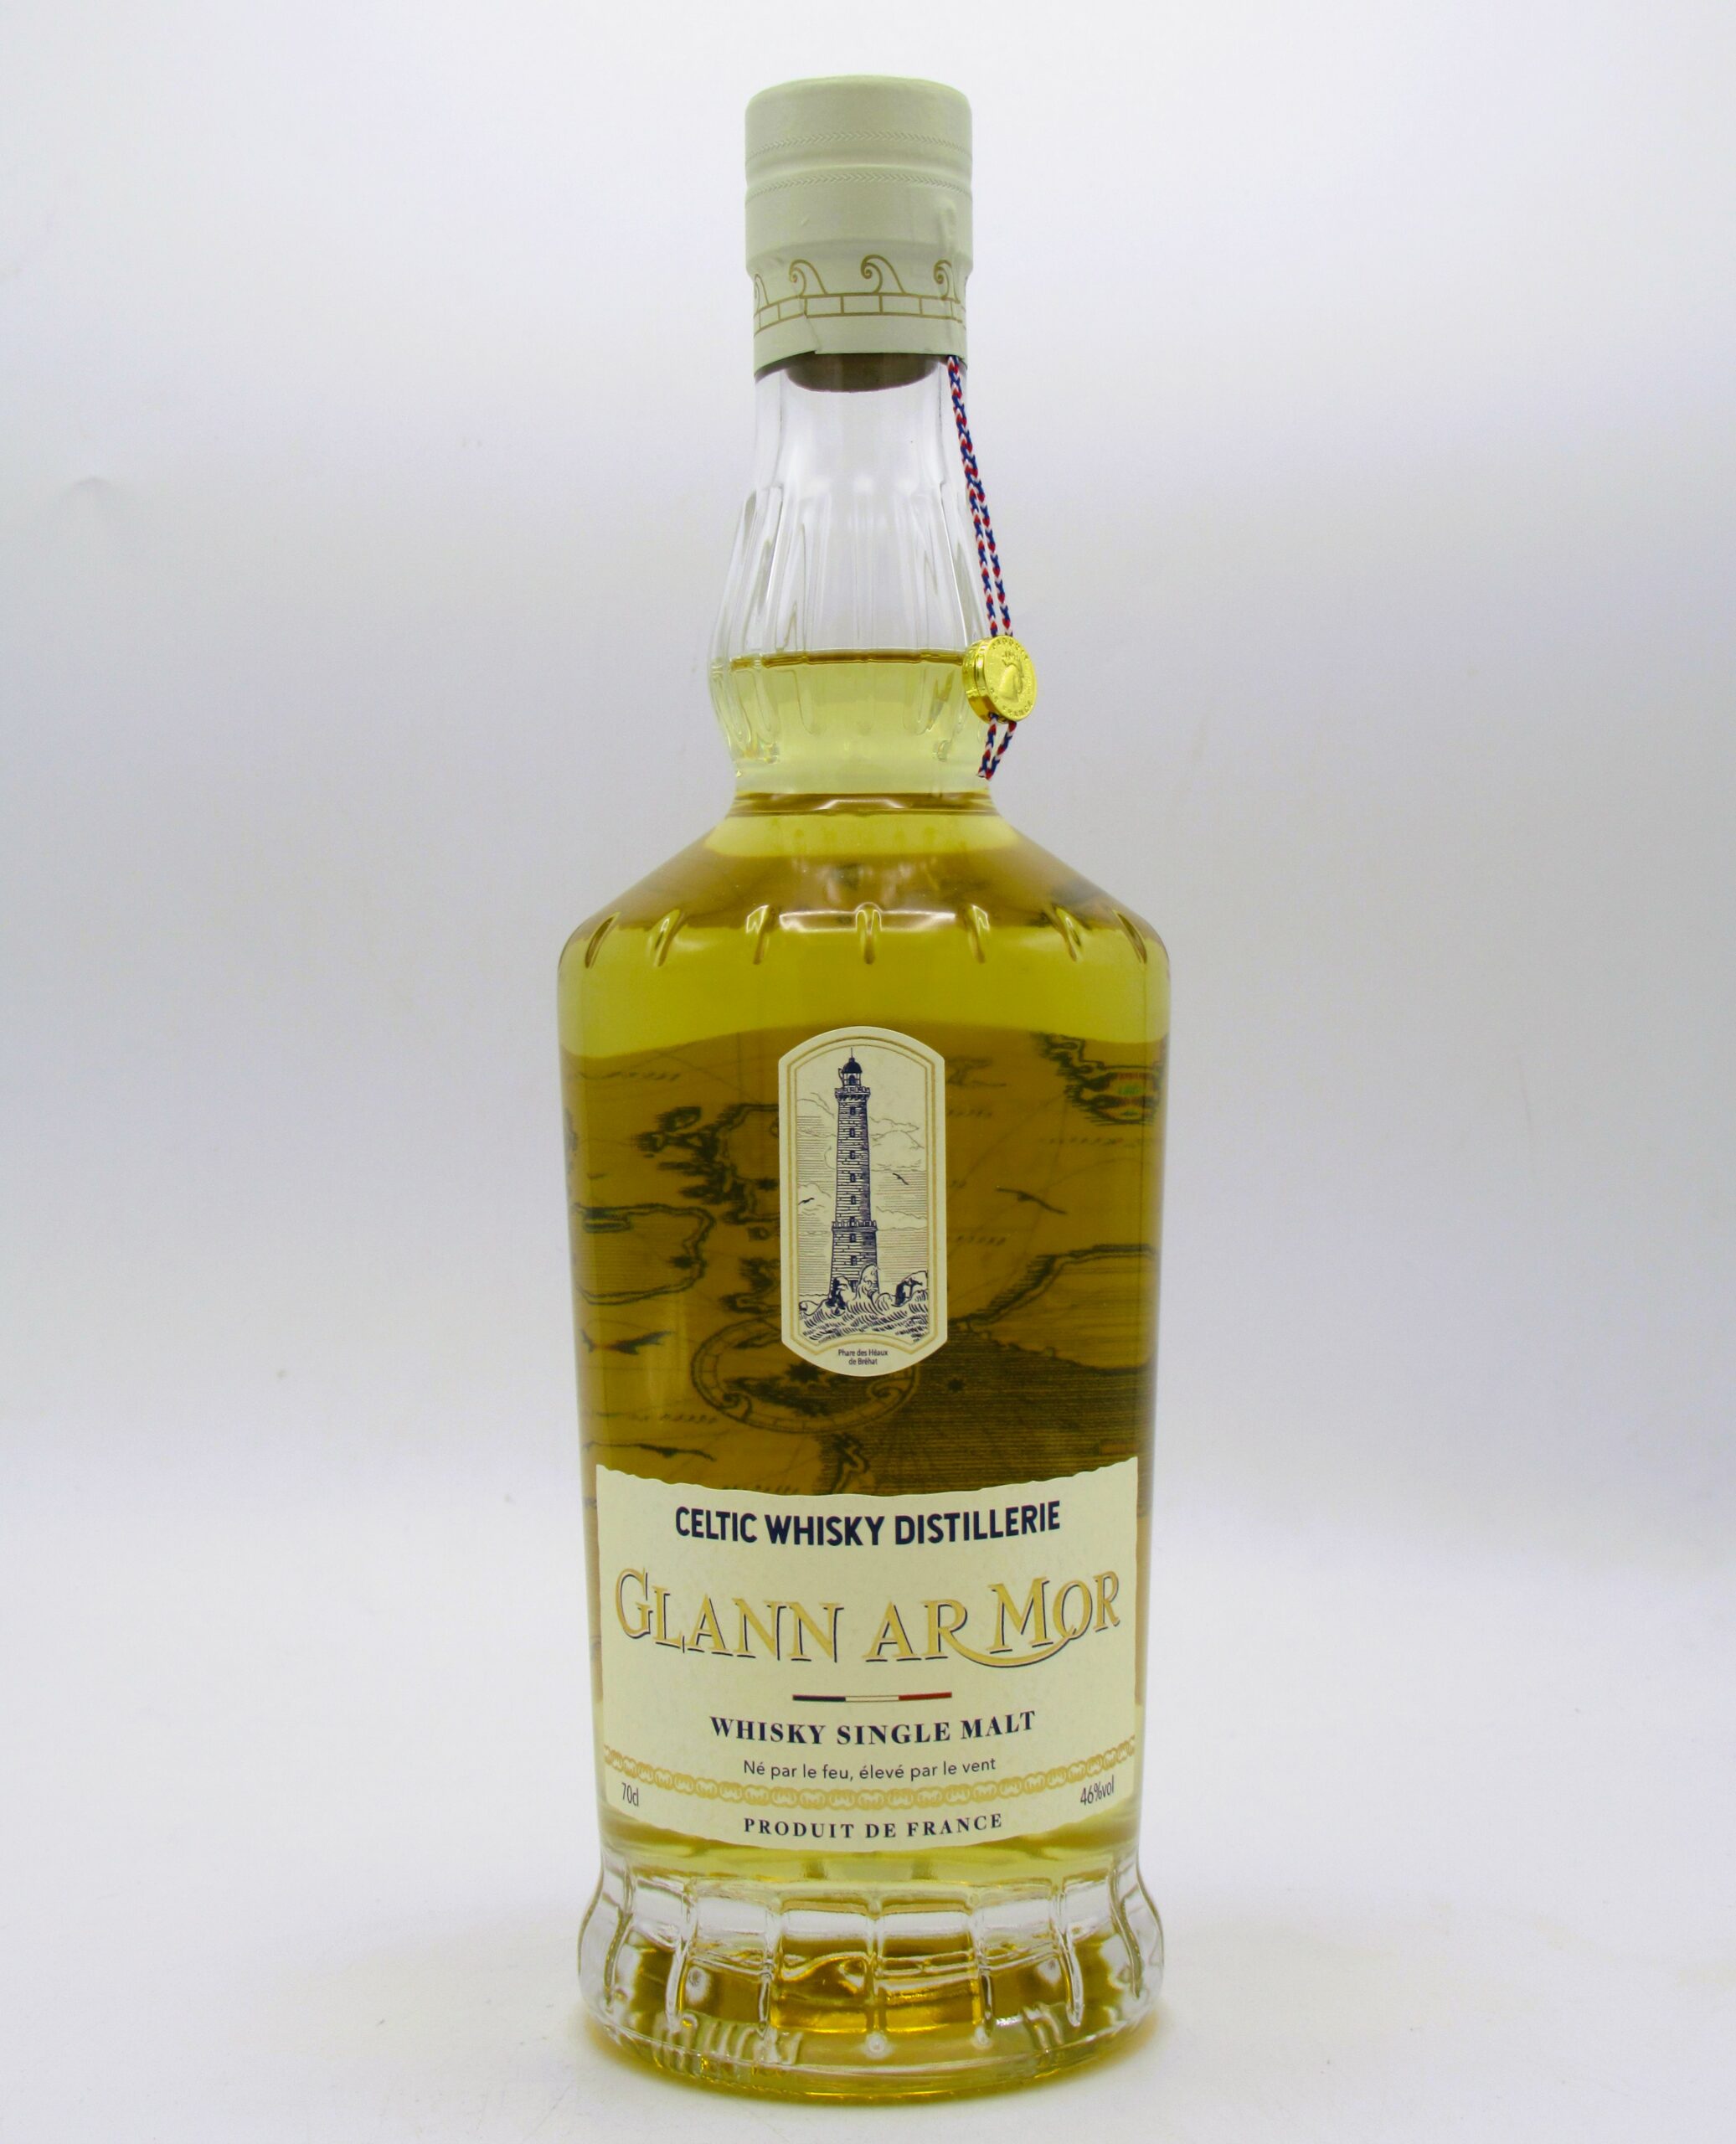 https://caviste-lehavre.fr/wp-content/uploads/single-malt-whisky-france-breton-glann-ar-mor-celtic-whisky-company-70cl--scaled.jpg